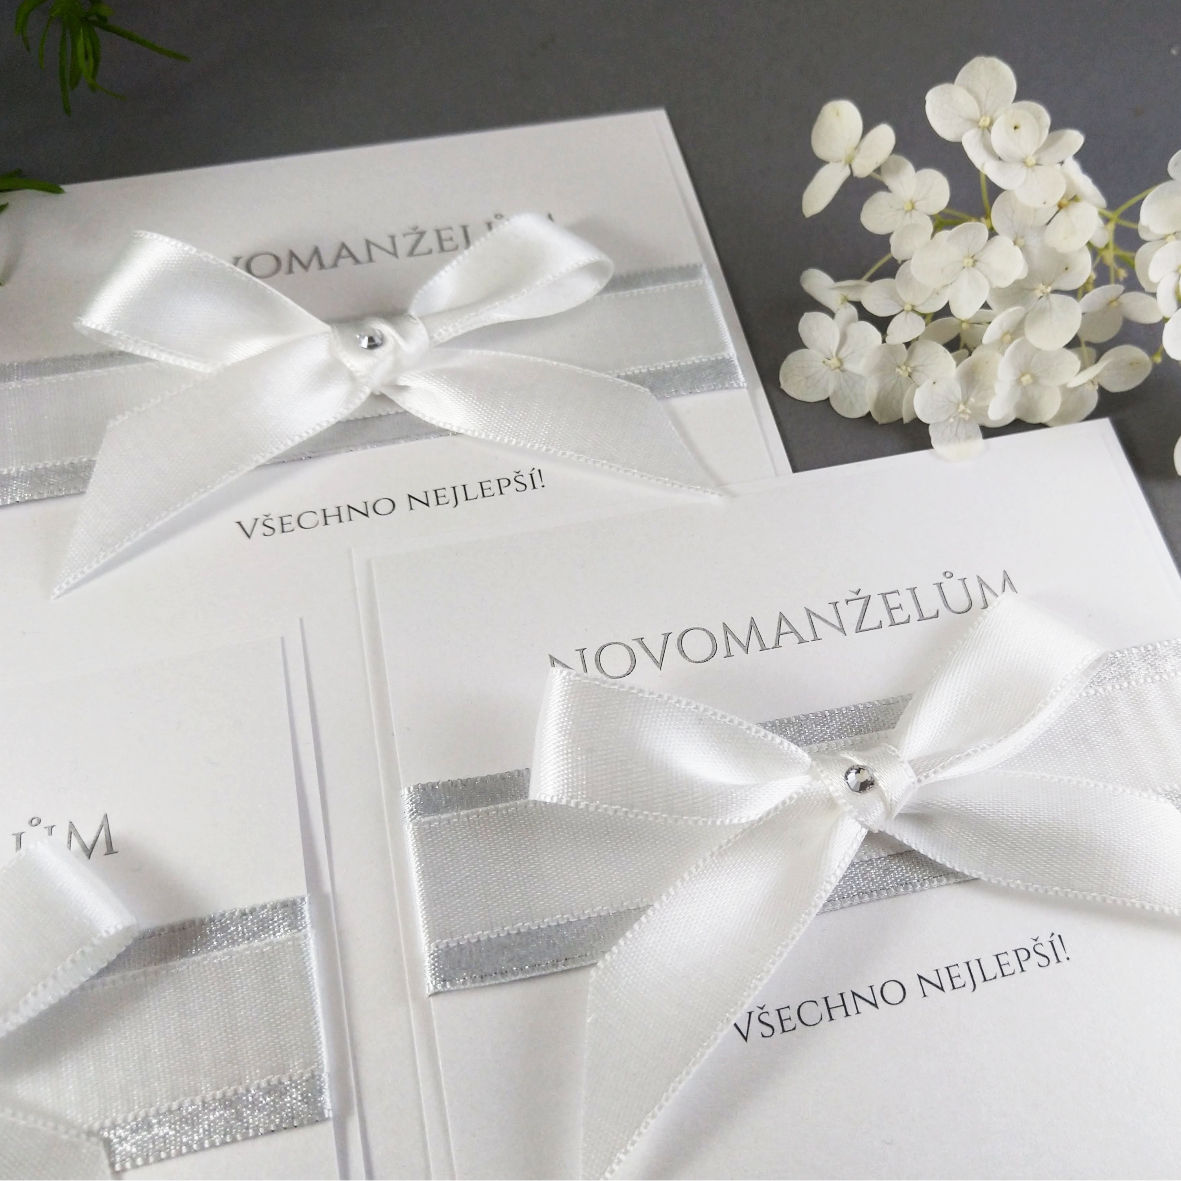 Blahopřání k svatbě – kašírovaná karta s atlasovými stuhami, barva bílá + stříbrná.